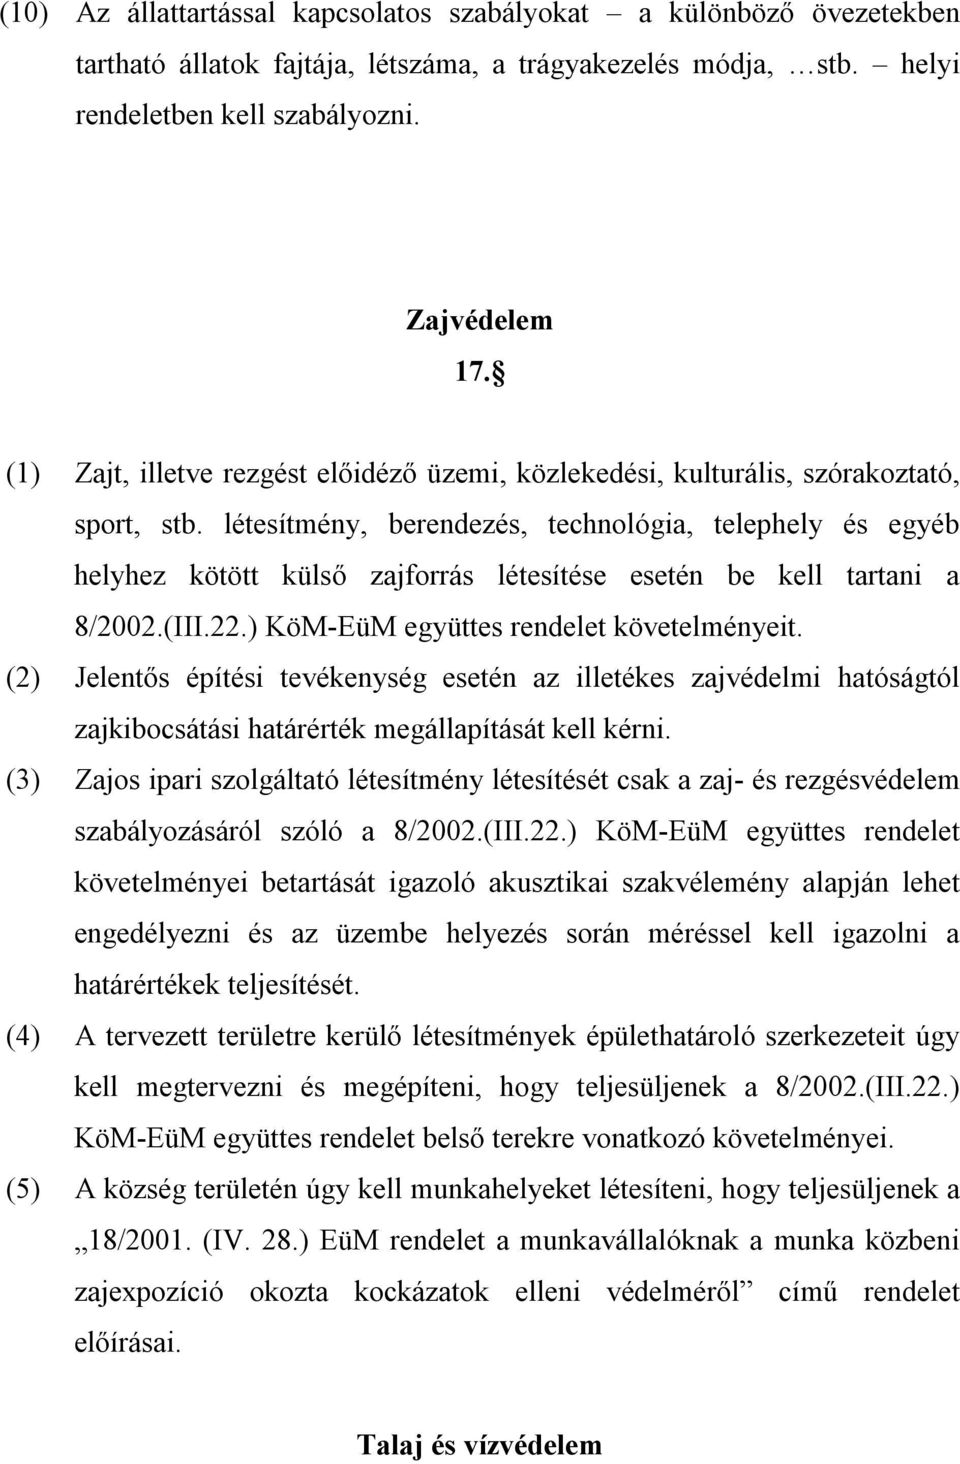 létesítmény, berendezés, technológia, telephely és egyéb helyhez kötött külső zajforrás létesítése esetén be kell tartani a 8/2002.(III.22.) KöM-EüM együttes rendelet követelményeit.